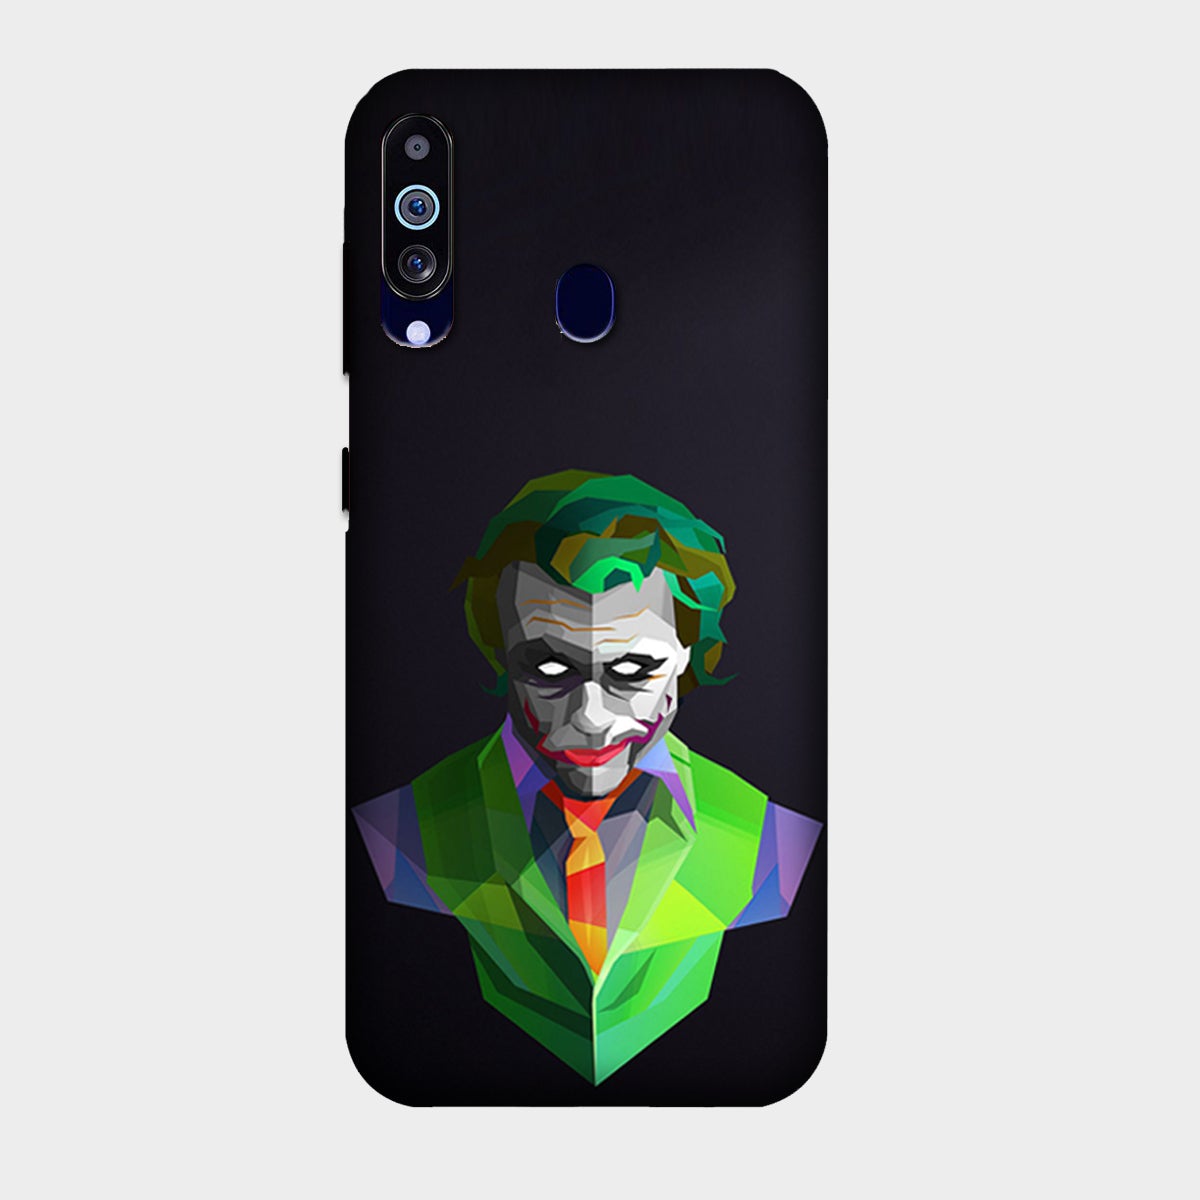 Joker Green - Mobile Phone Cover - Hard Case - Samsung - Samsung